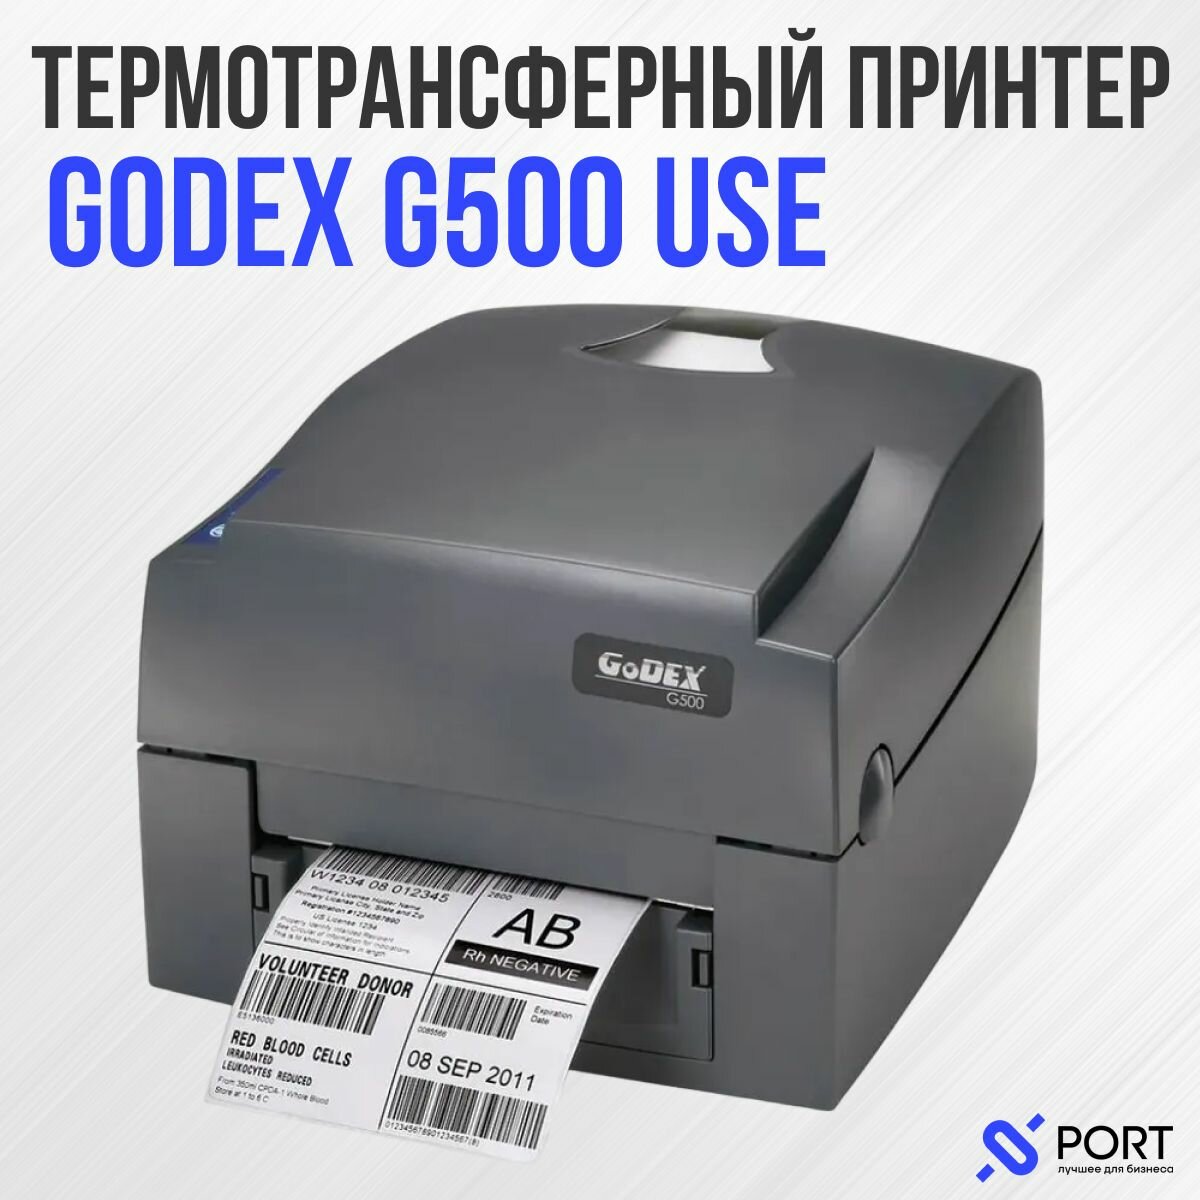 Термотрансферный принтер Godex G500 USE, USB, RS-232, Ethernet